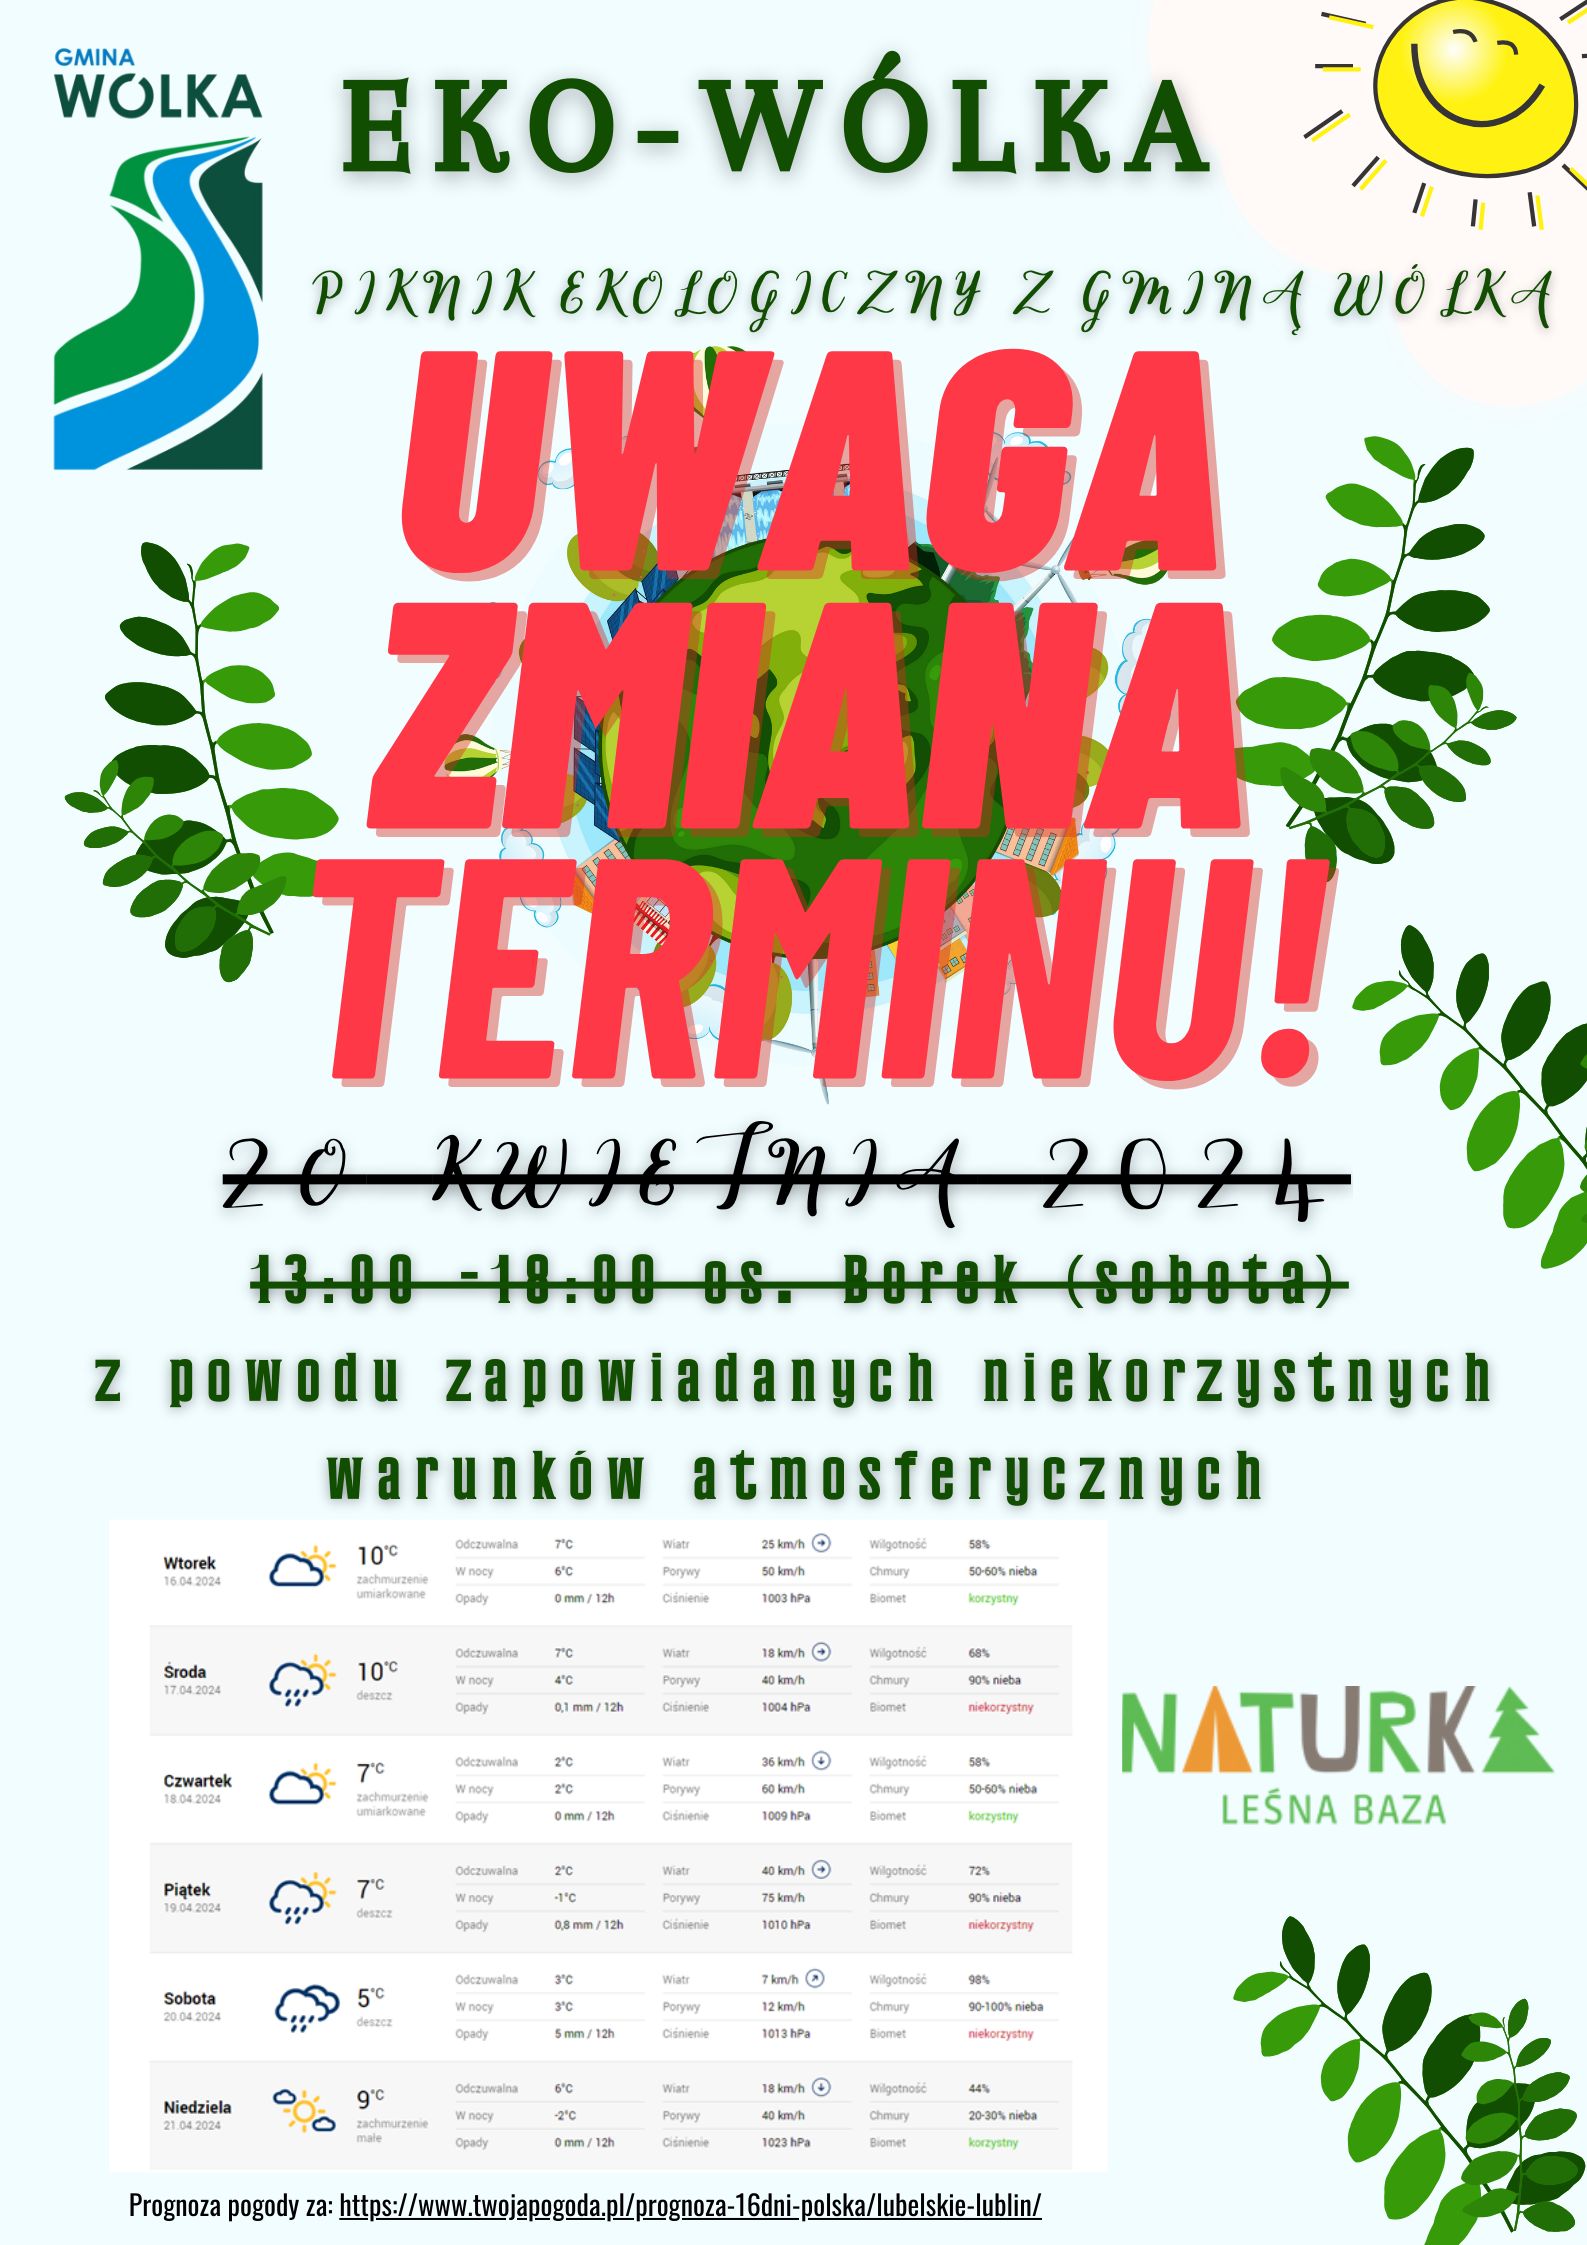 Plakat informacyjny o pikniku ekologicznym z grafikami liści, wyraźnymi hasłami jak "Uwaga zmiana terminu!" oraz szczegółami wydarzenia, datą, godziną, miejscem i prognozą pogody.